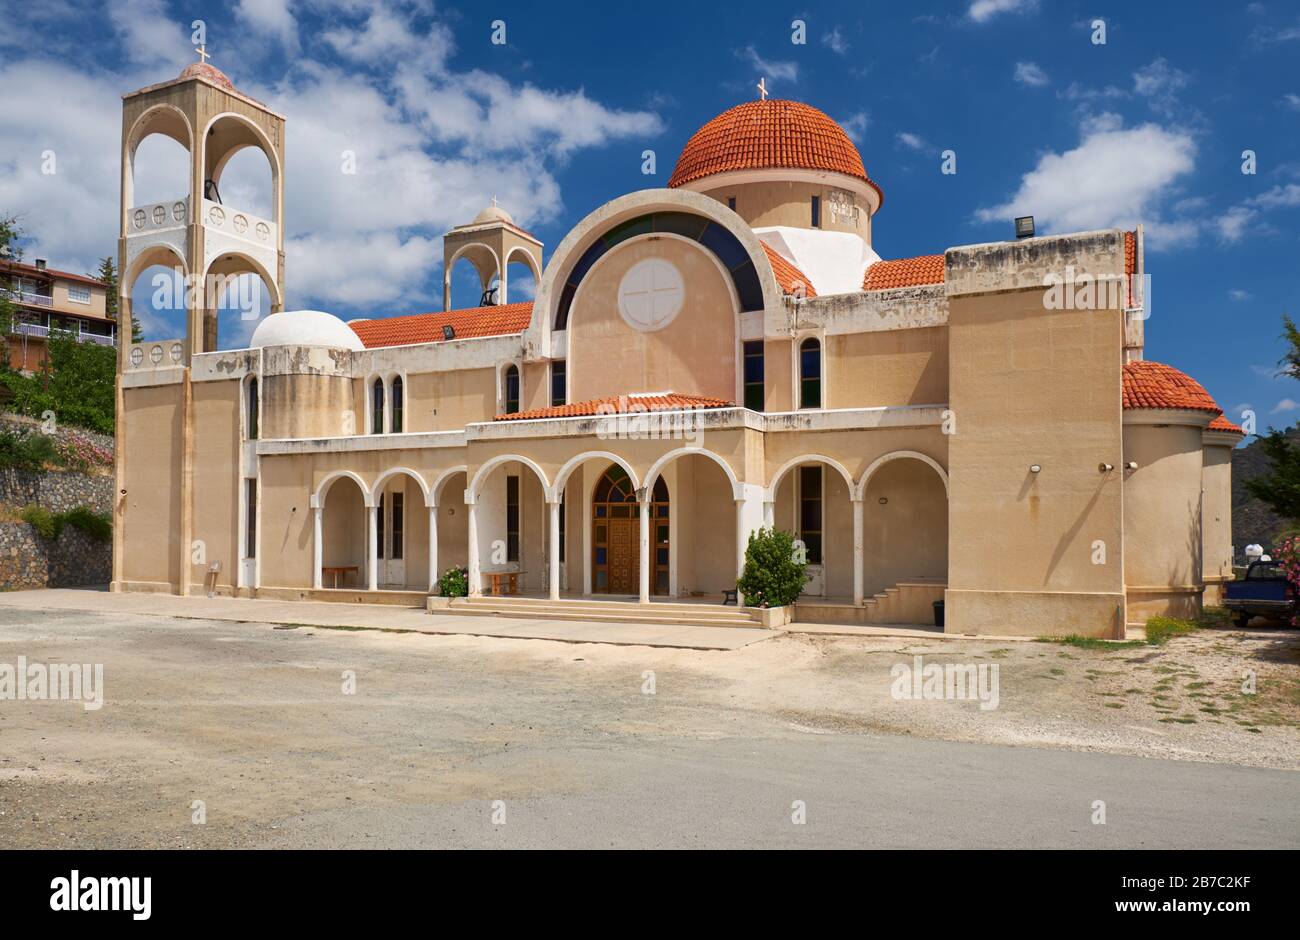 Agios Panteleimonas Kirche - die schöne Darstellung der modernen Architektur im Stil des byzantinischen Stils. Kakopetria Dorf. Nikosia District. Zypern Stockfoto